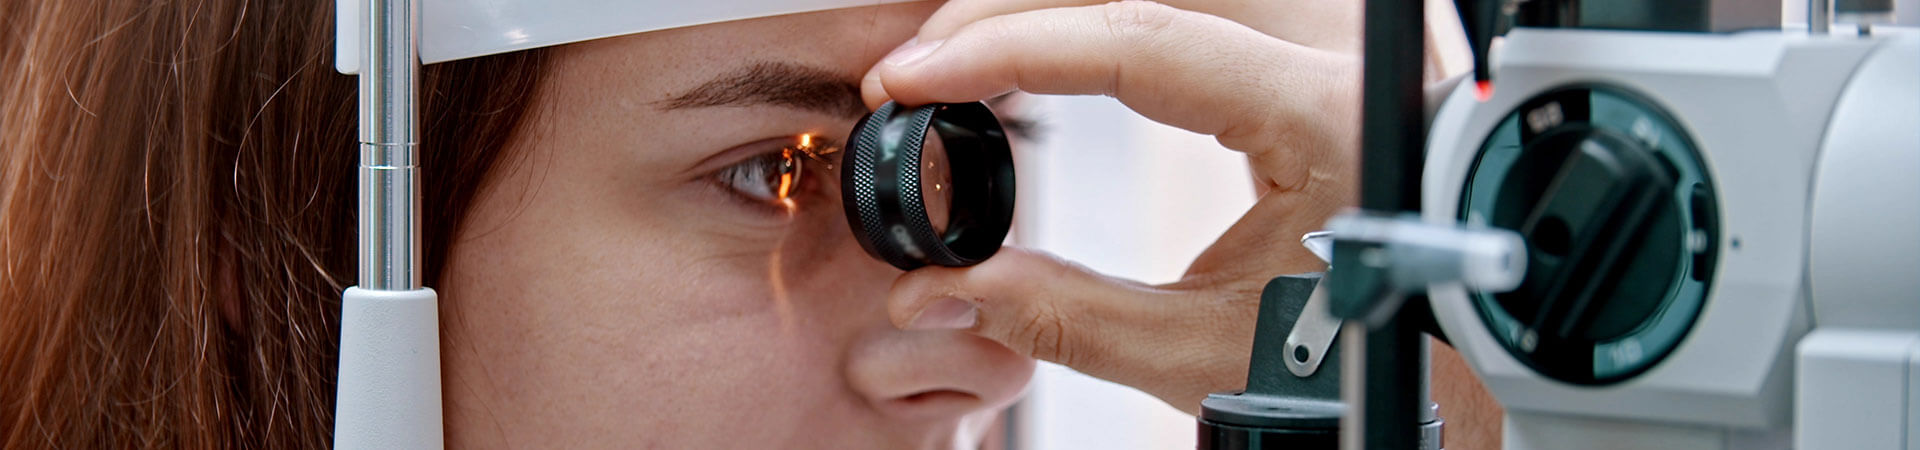 Pregled lekara specijaliste oftalmologije